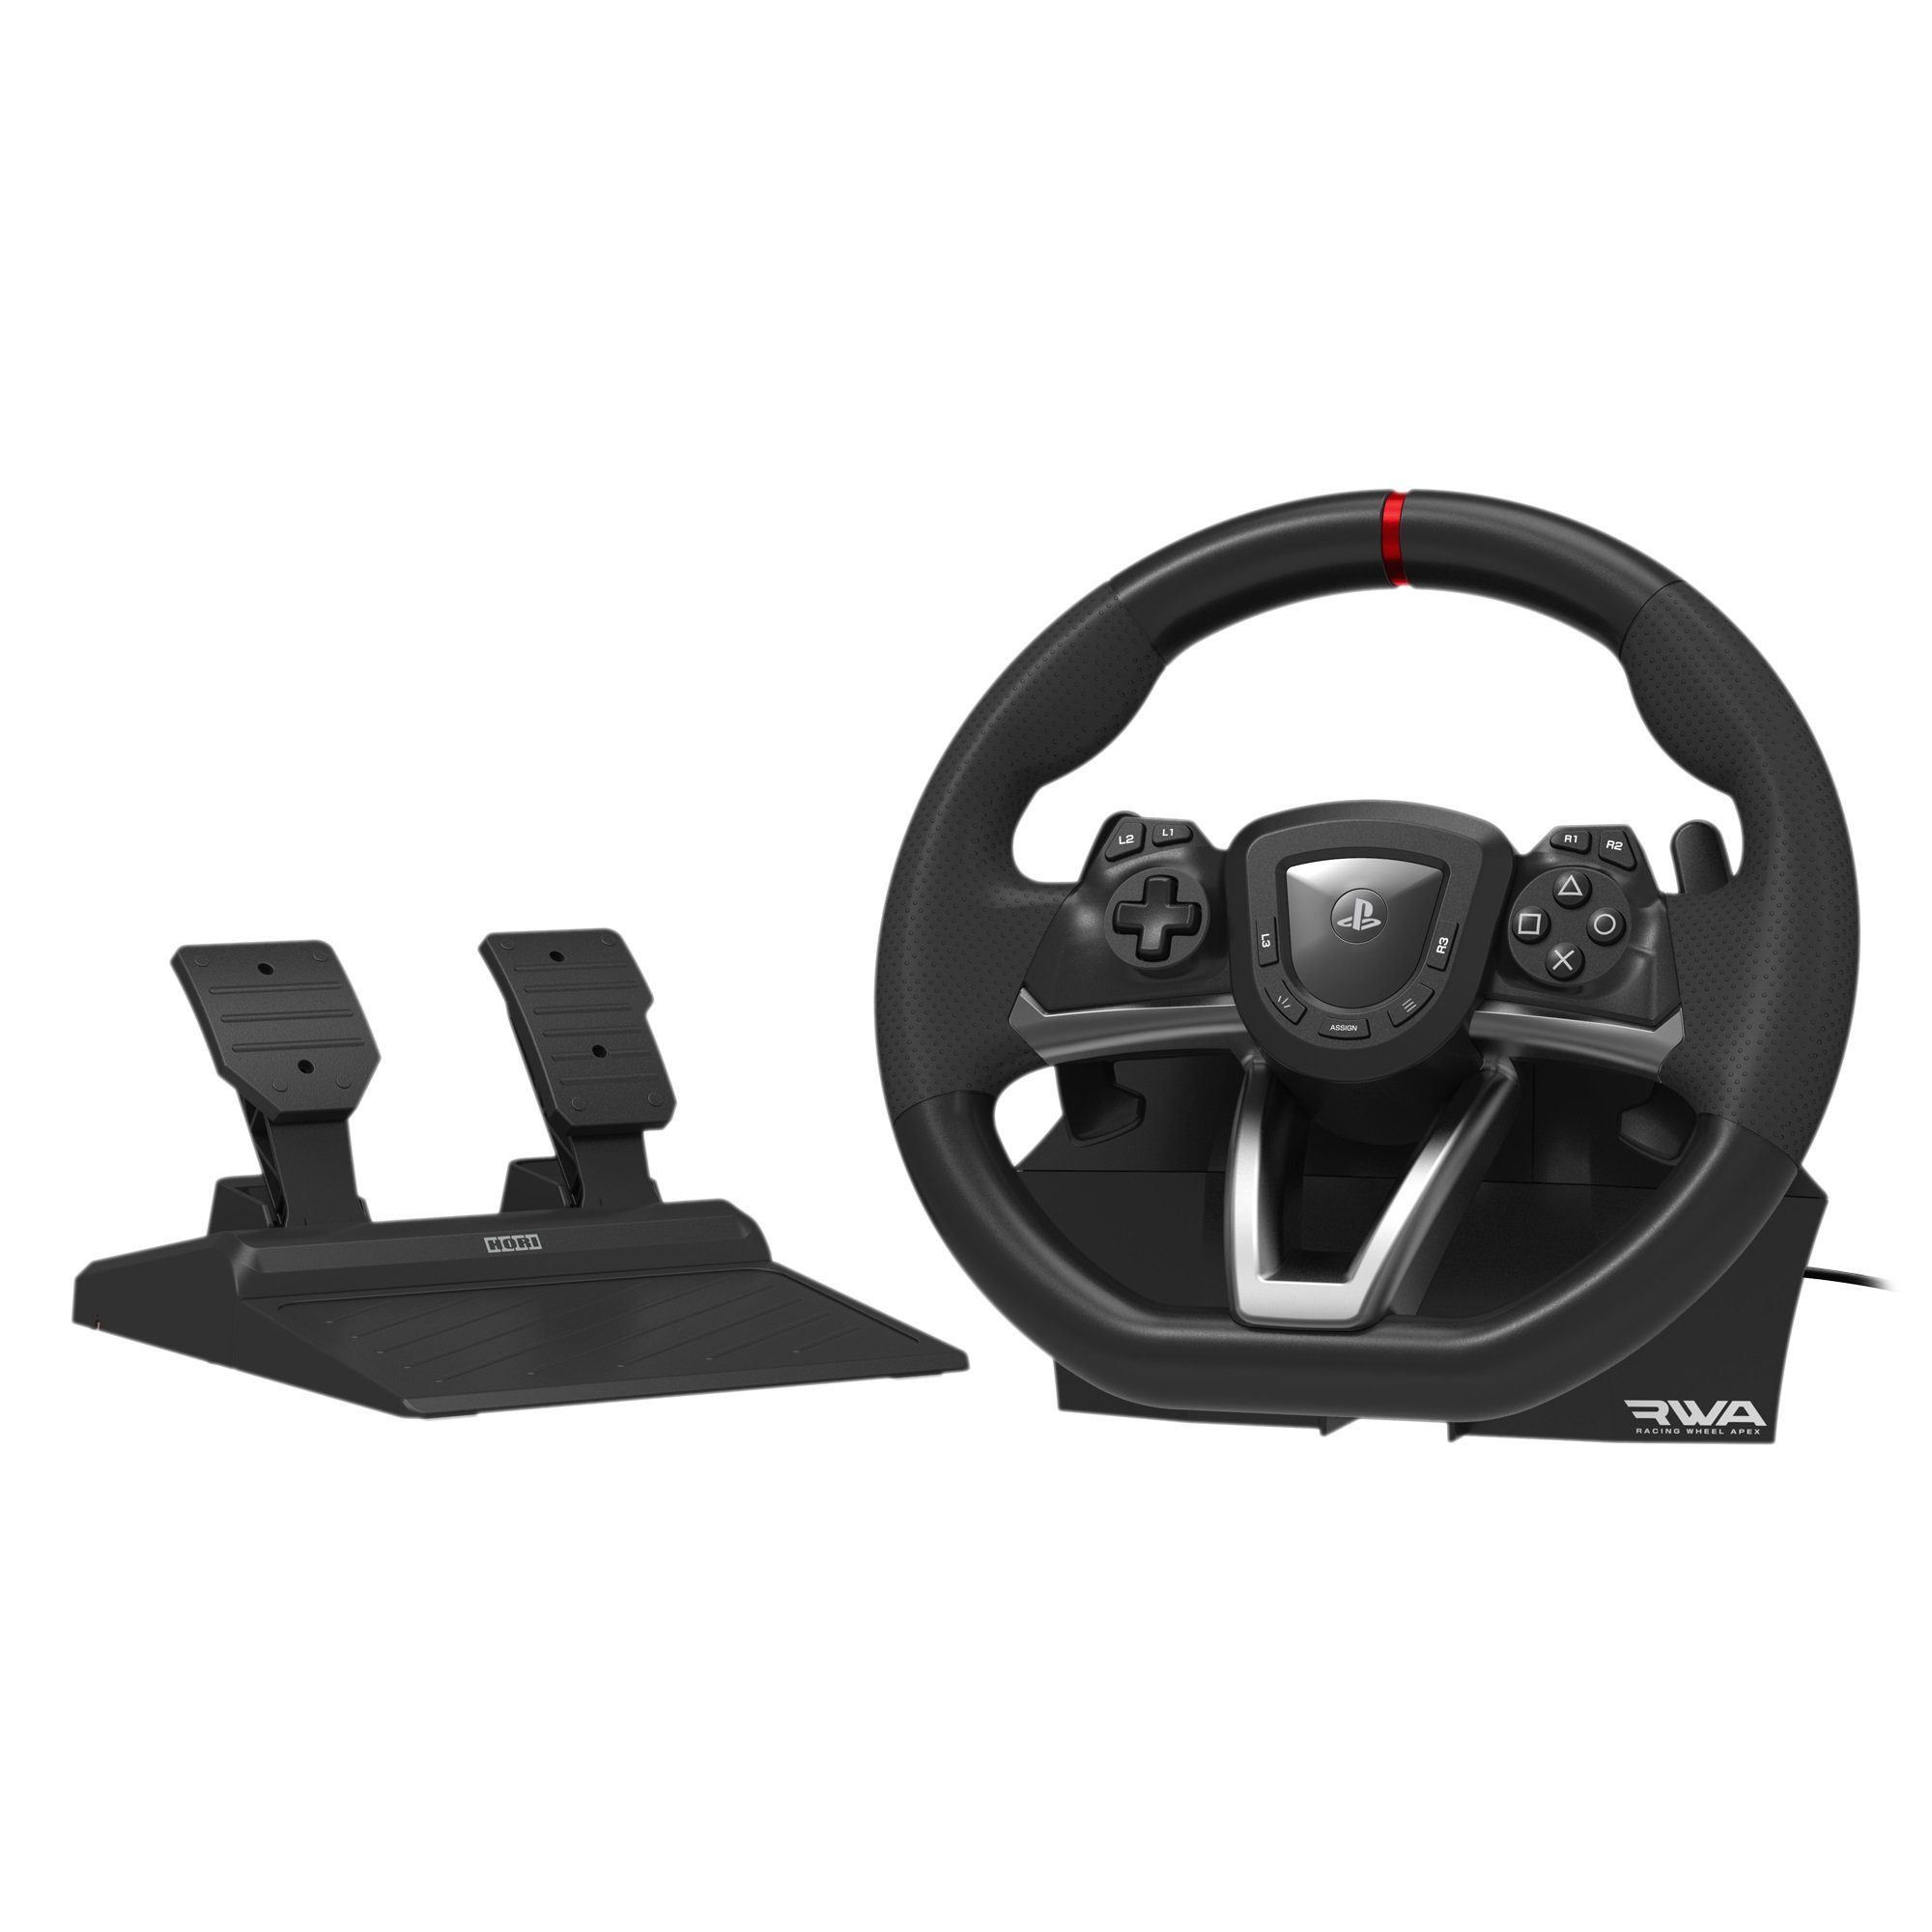 Racing Kompatibel 4 PC Wheel Lenkrad Apex RWA: Hori 5, und Lenkrad, PS5 Playstation mit Playstation